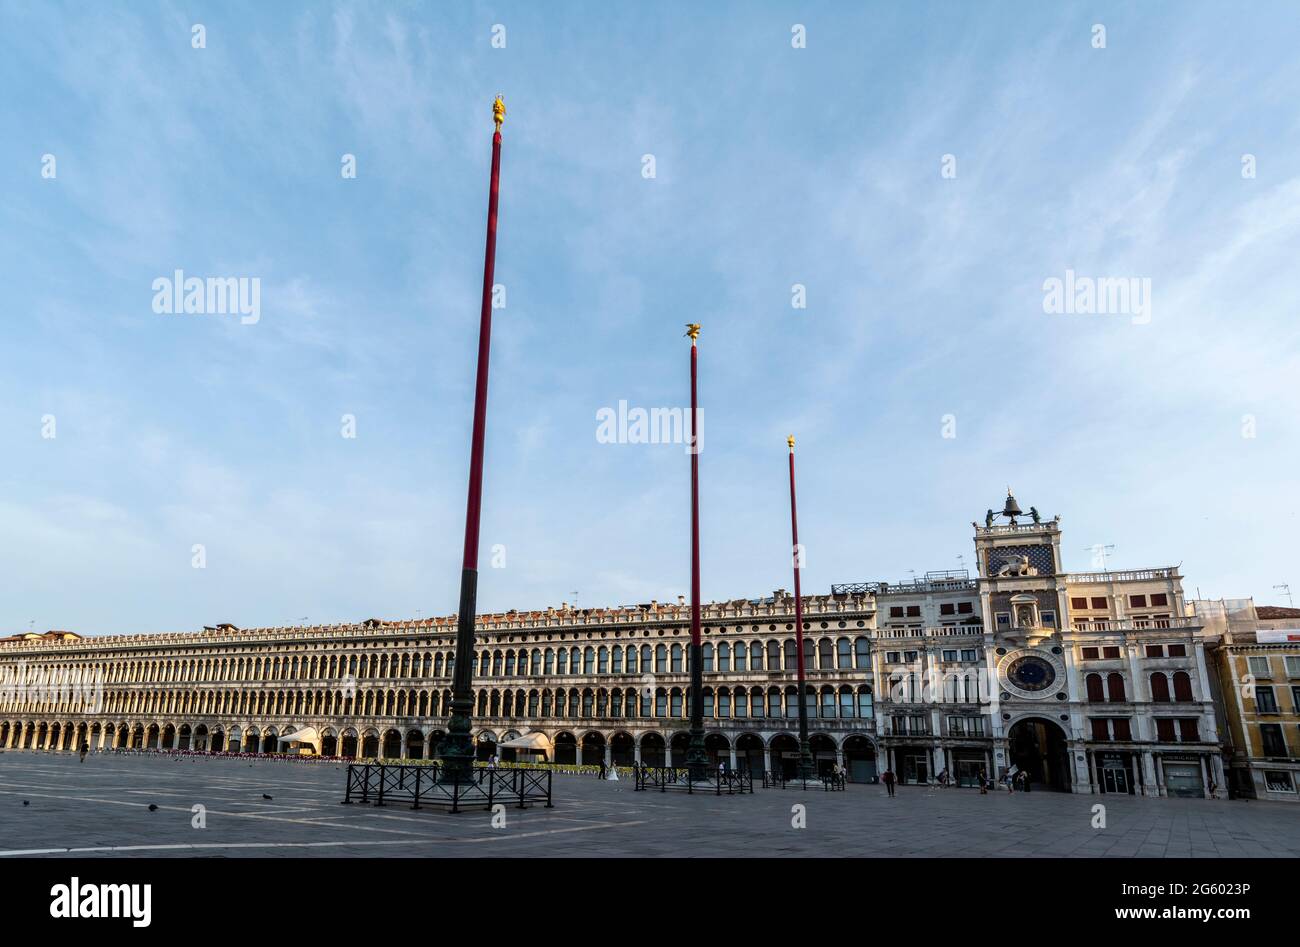 Una hilera de postes de bandera altos en la Piazza San Marco (Plaza de San Marcos) en Venecia, al norte de Italia Foto de stock